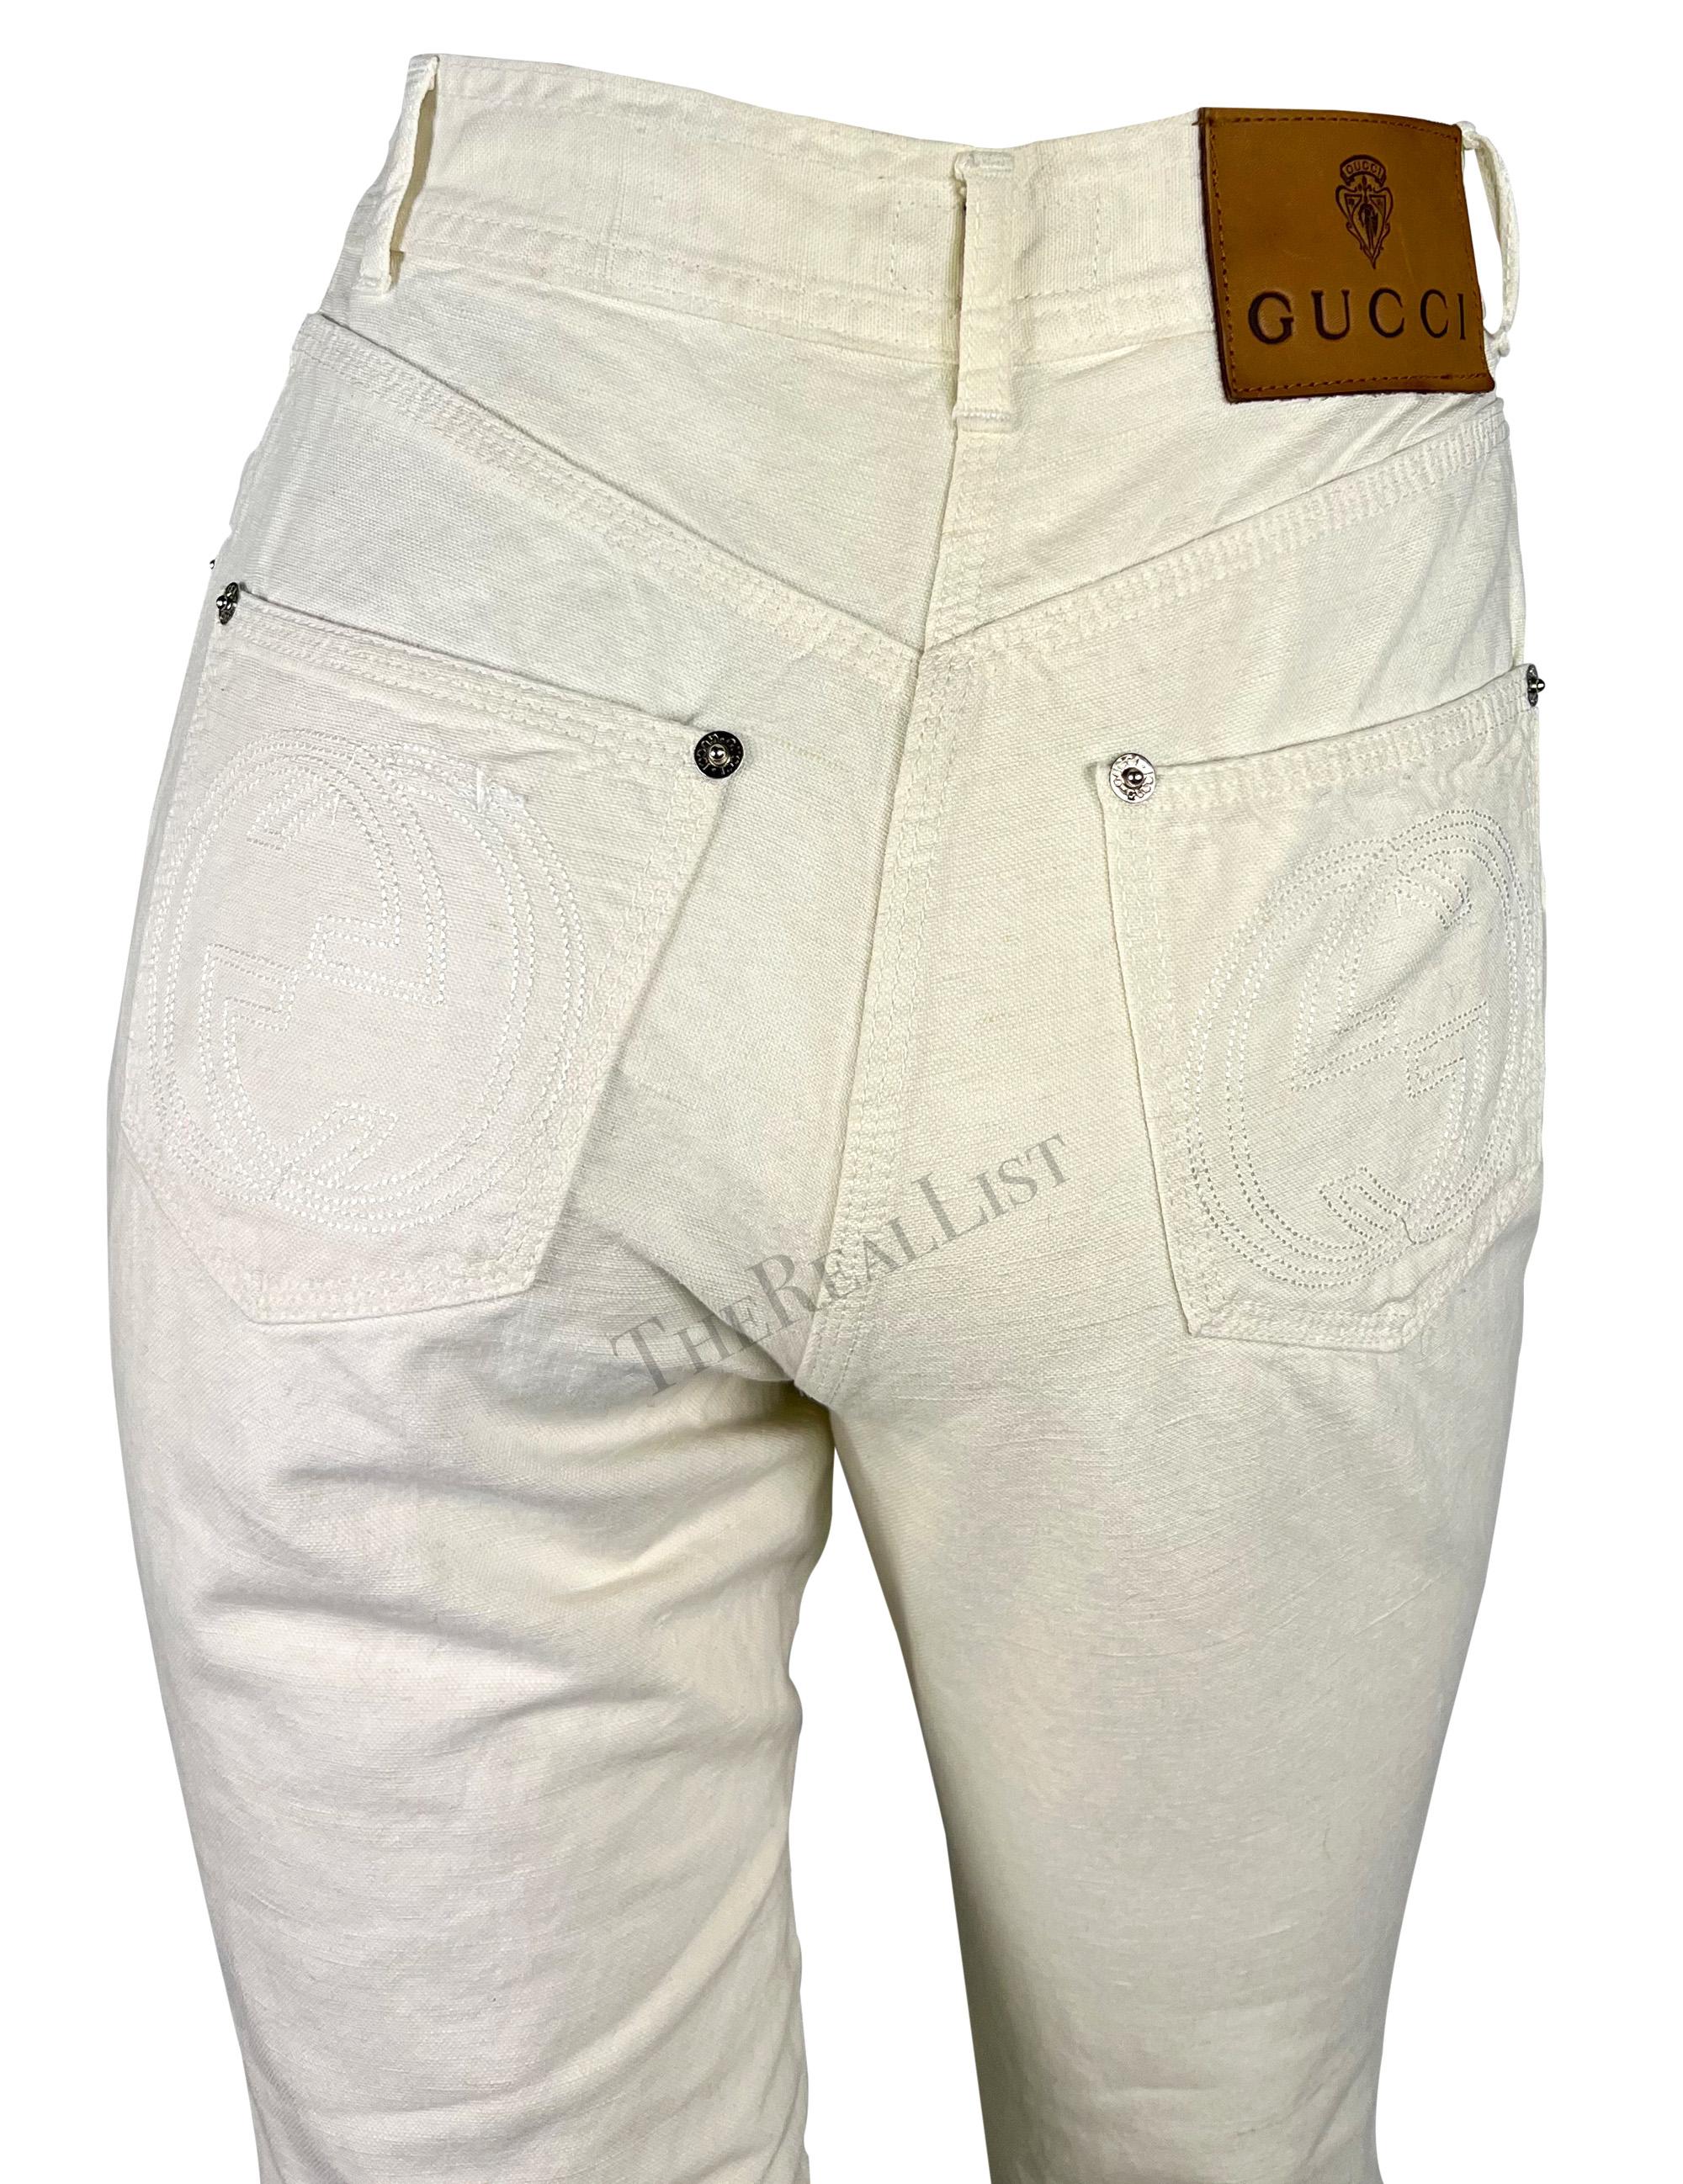 Whiting présente un pantalon Gucci en lin blanc cassé, conçu par Tom Ford. Issu de la collection printemps-été 1995, ce pantalon à taille haute est confectionné dans un mélange léger de coton et de lin. Doté de larges logos GG imbriqués sur les